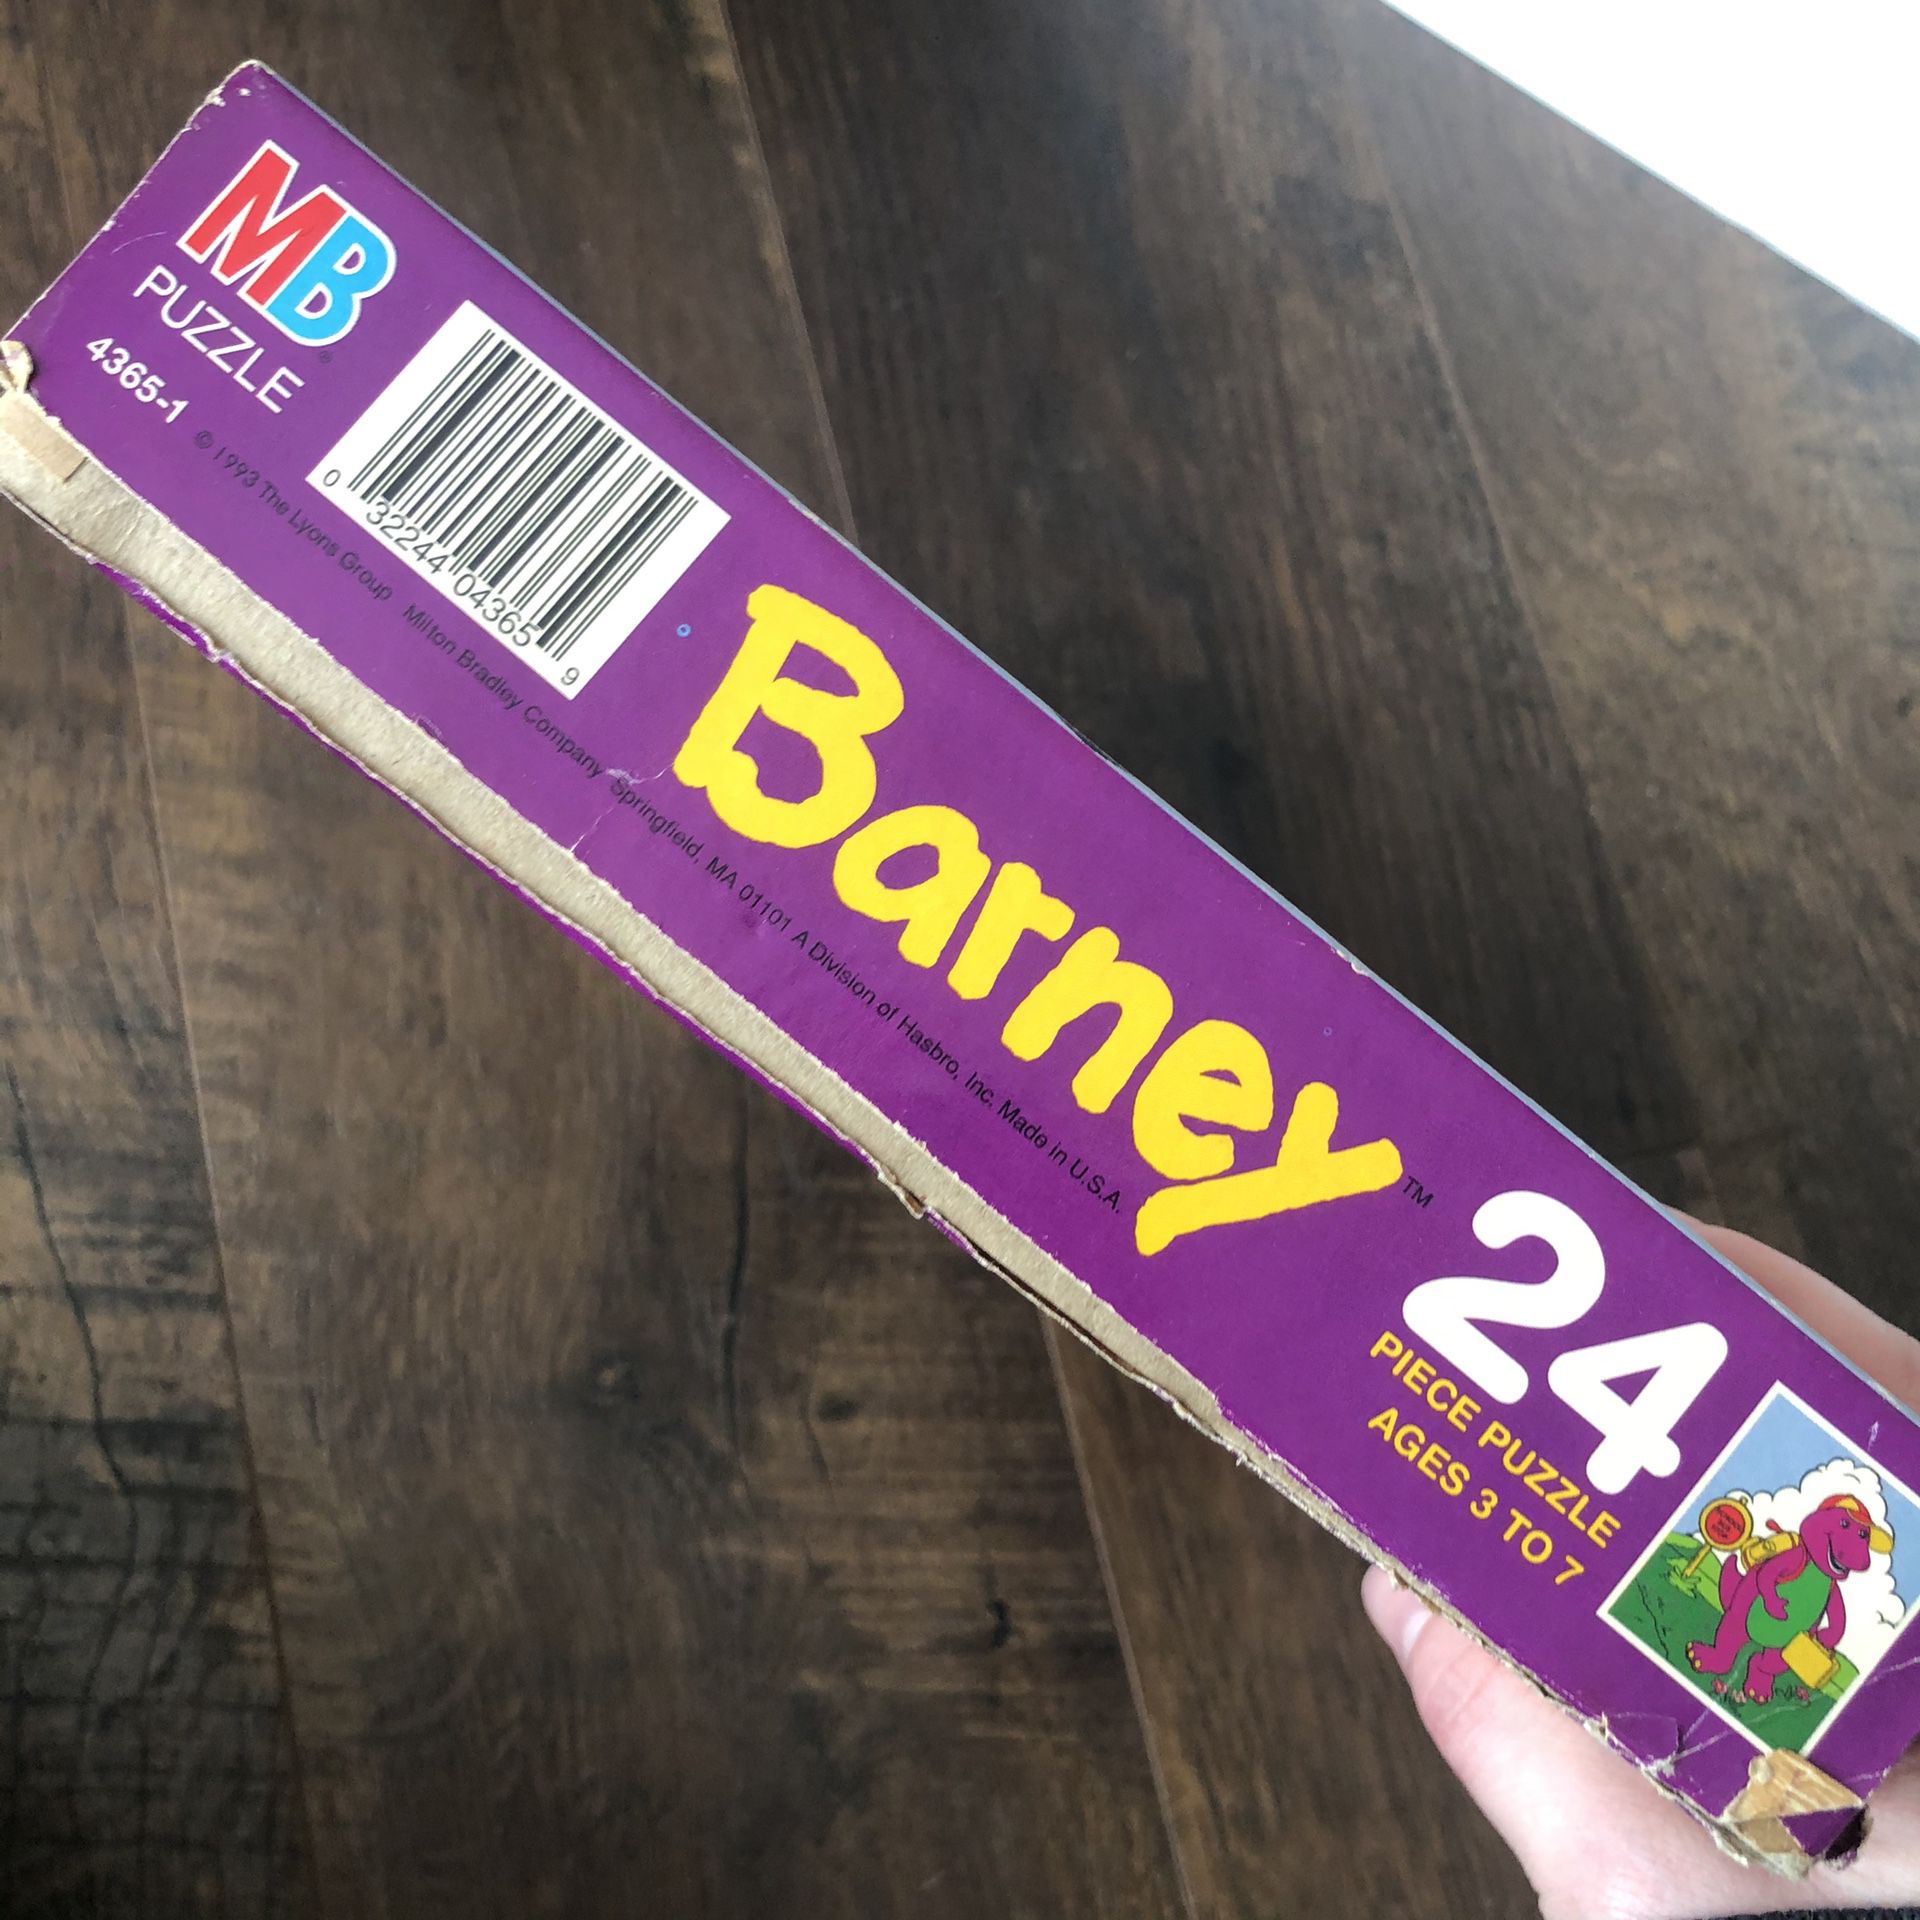 Vintage Barney Puzzle